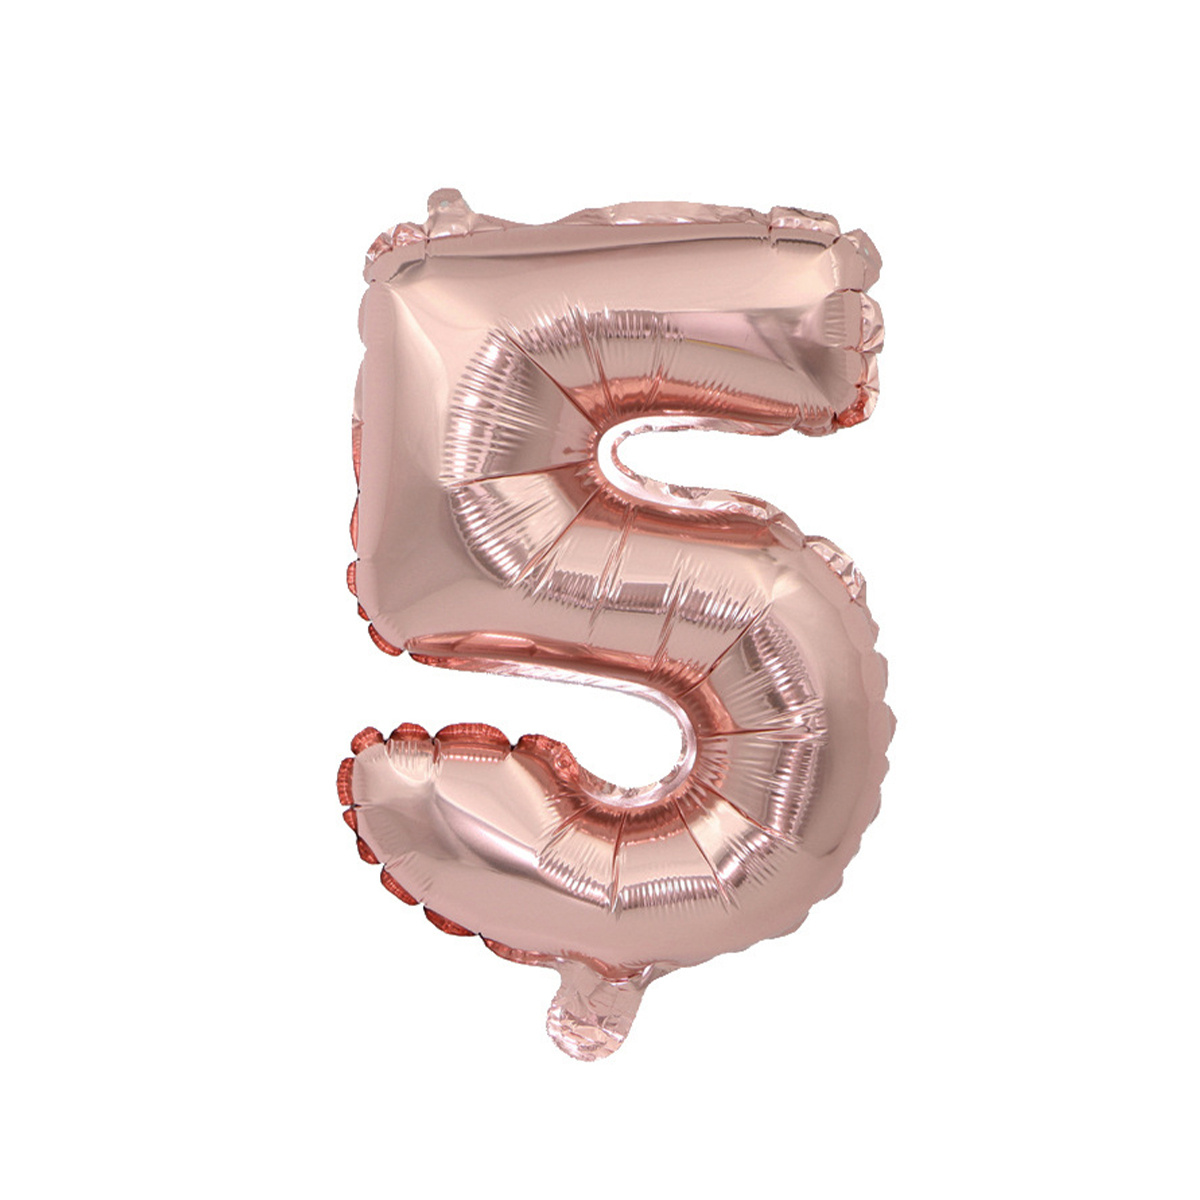 Globos gigantes de papel de aluminio de 32 pulgadas, color oro rosa con el  número 1, globos de decoración de fiesta de cumpleaños para niños (1)